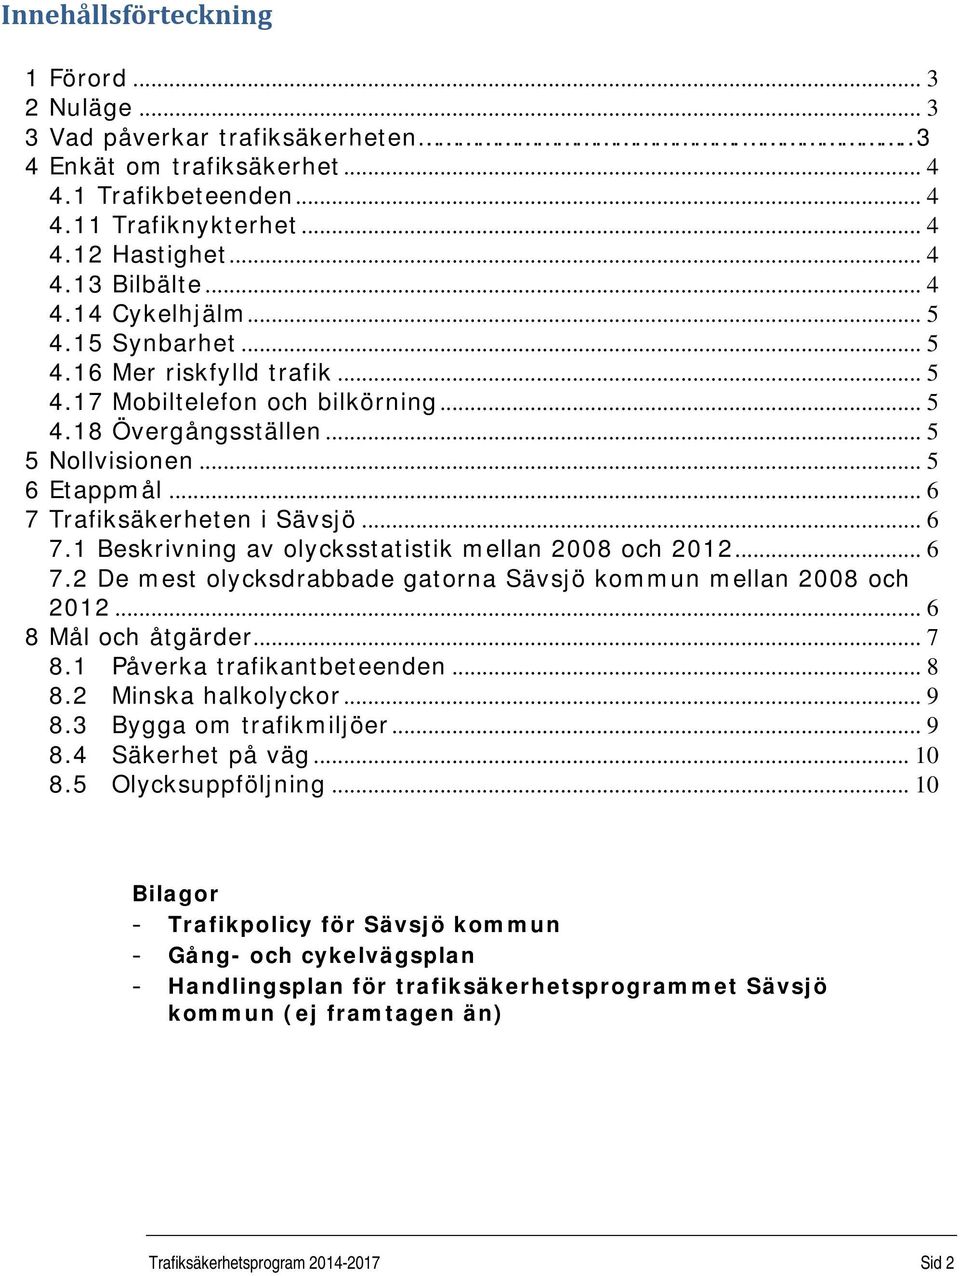 .. 6 7 Trafiksäkerheten i Sävsjö... 6 7.1 Beskrivning av olycksstatistik mellan 2008 och 2012... 6 7.2 De mest olycksdrabbade gatorna Sävsjö kommun mellan 2008 och 2012... 6 8 Mål och åtgärder... 7 8.